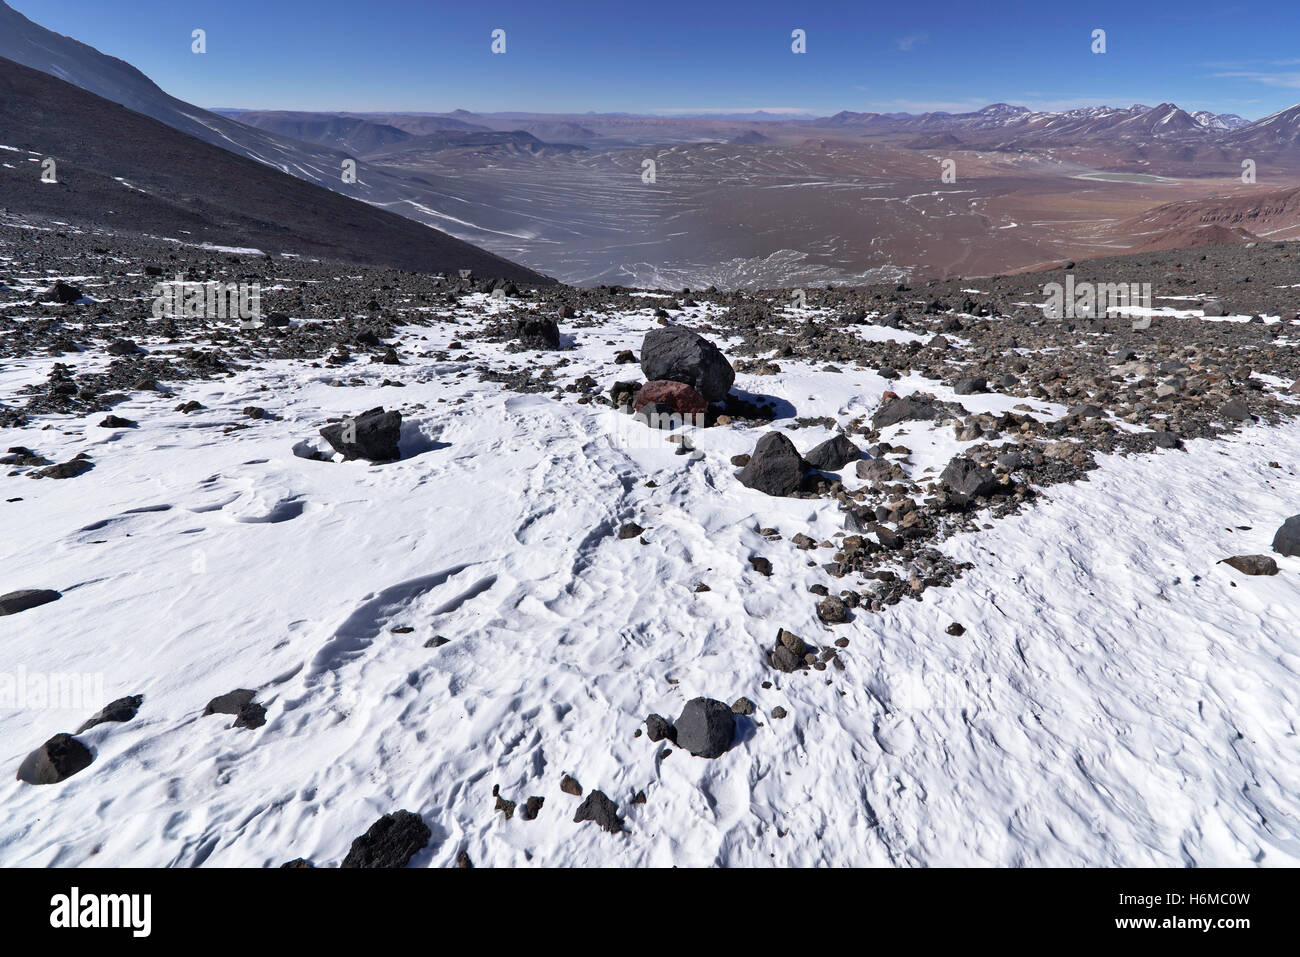 Schneebedeckten Gipfel des Berges mit einem herrlichen Blick ins Tal hinunter unten und weit entfernten Bergen. Stockfoto